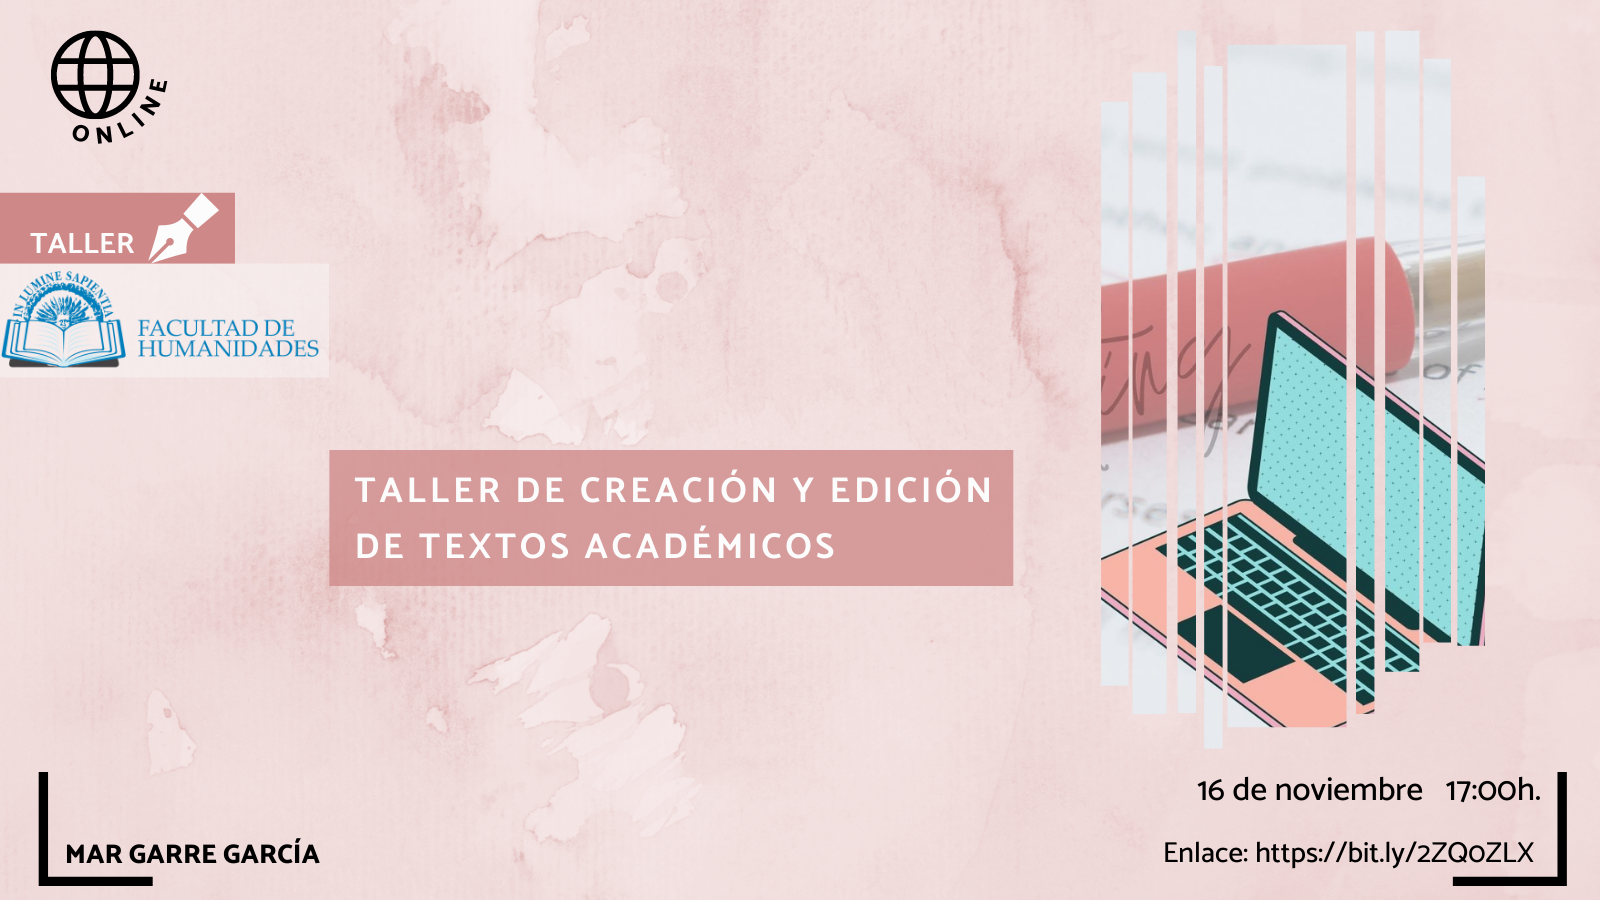 La Facultad de Humanidades y Mar Garre García organizan la actividad titulada “Taller de creación y edición de textos académicos”.